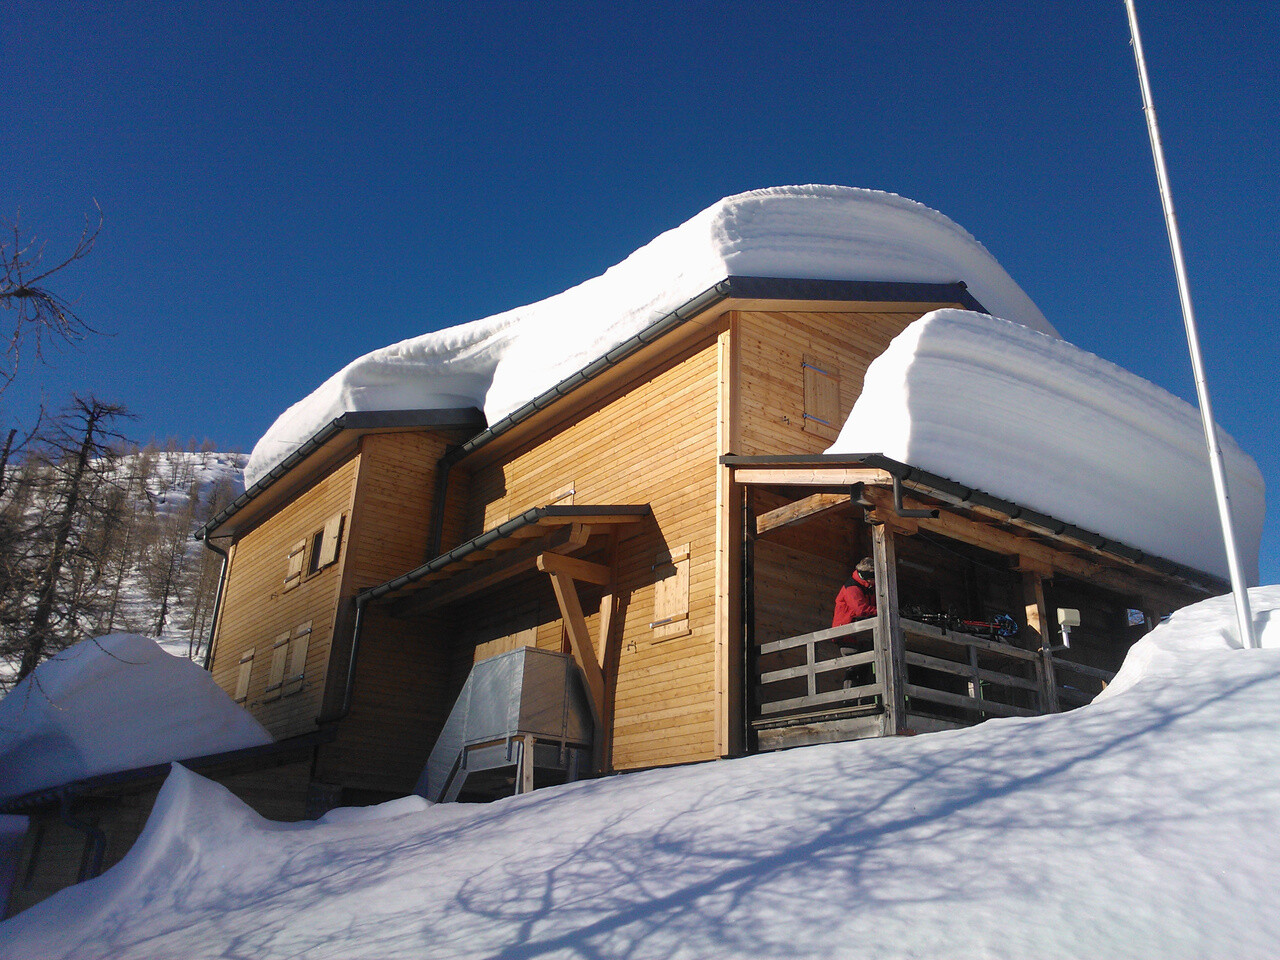 Hütte Capanna Buffalora mit mehreren Zentimetern Schnee auf dem Dach. 